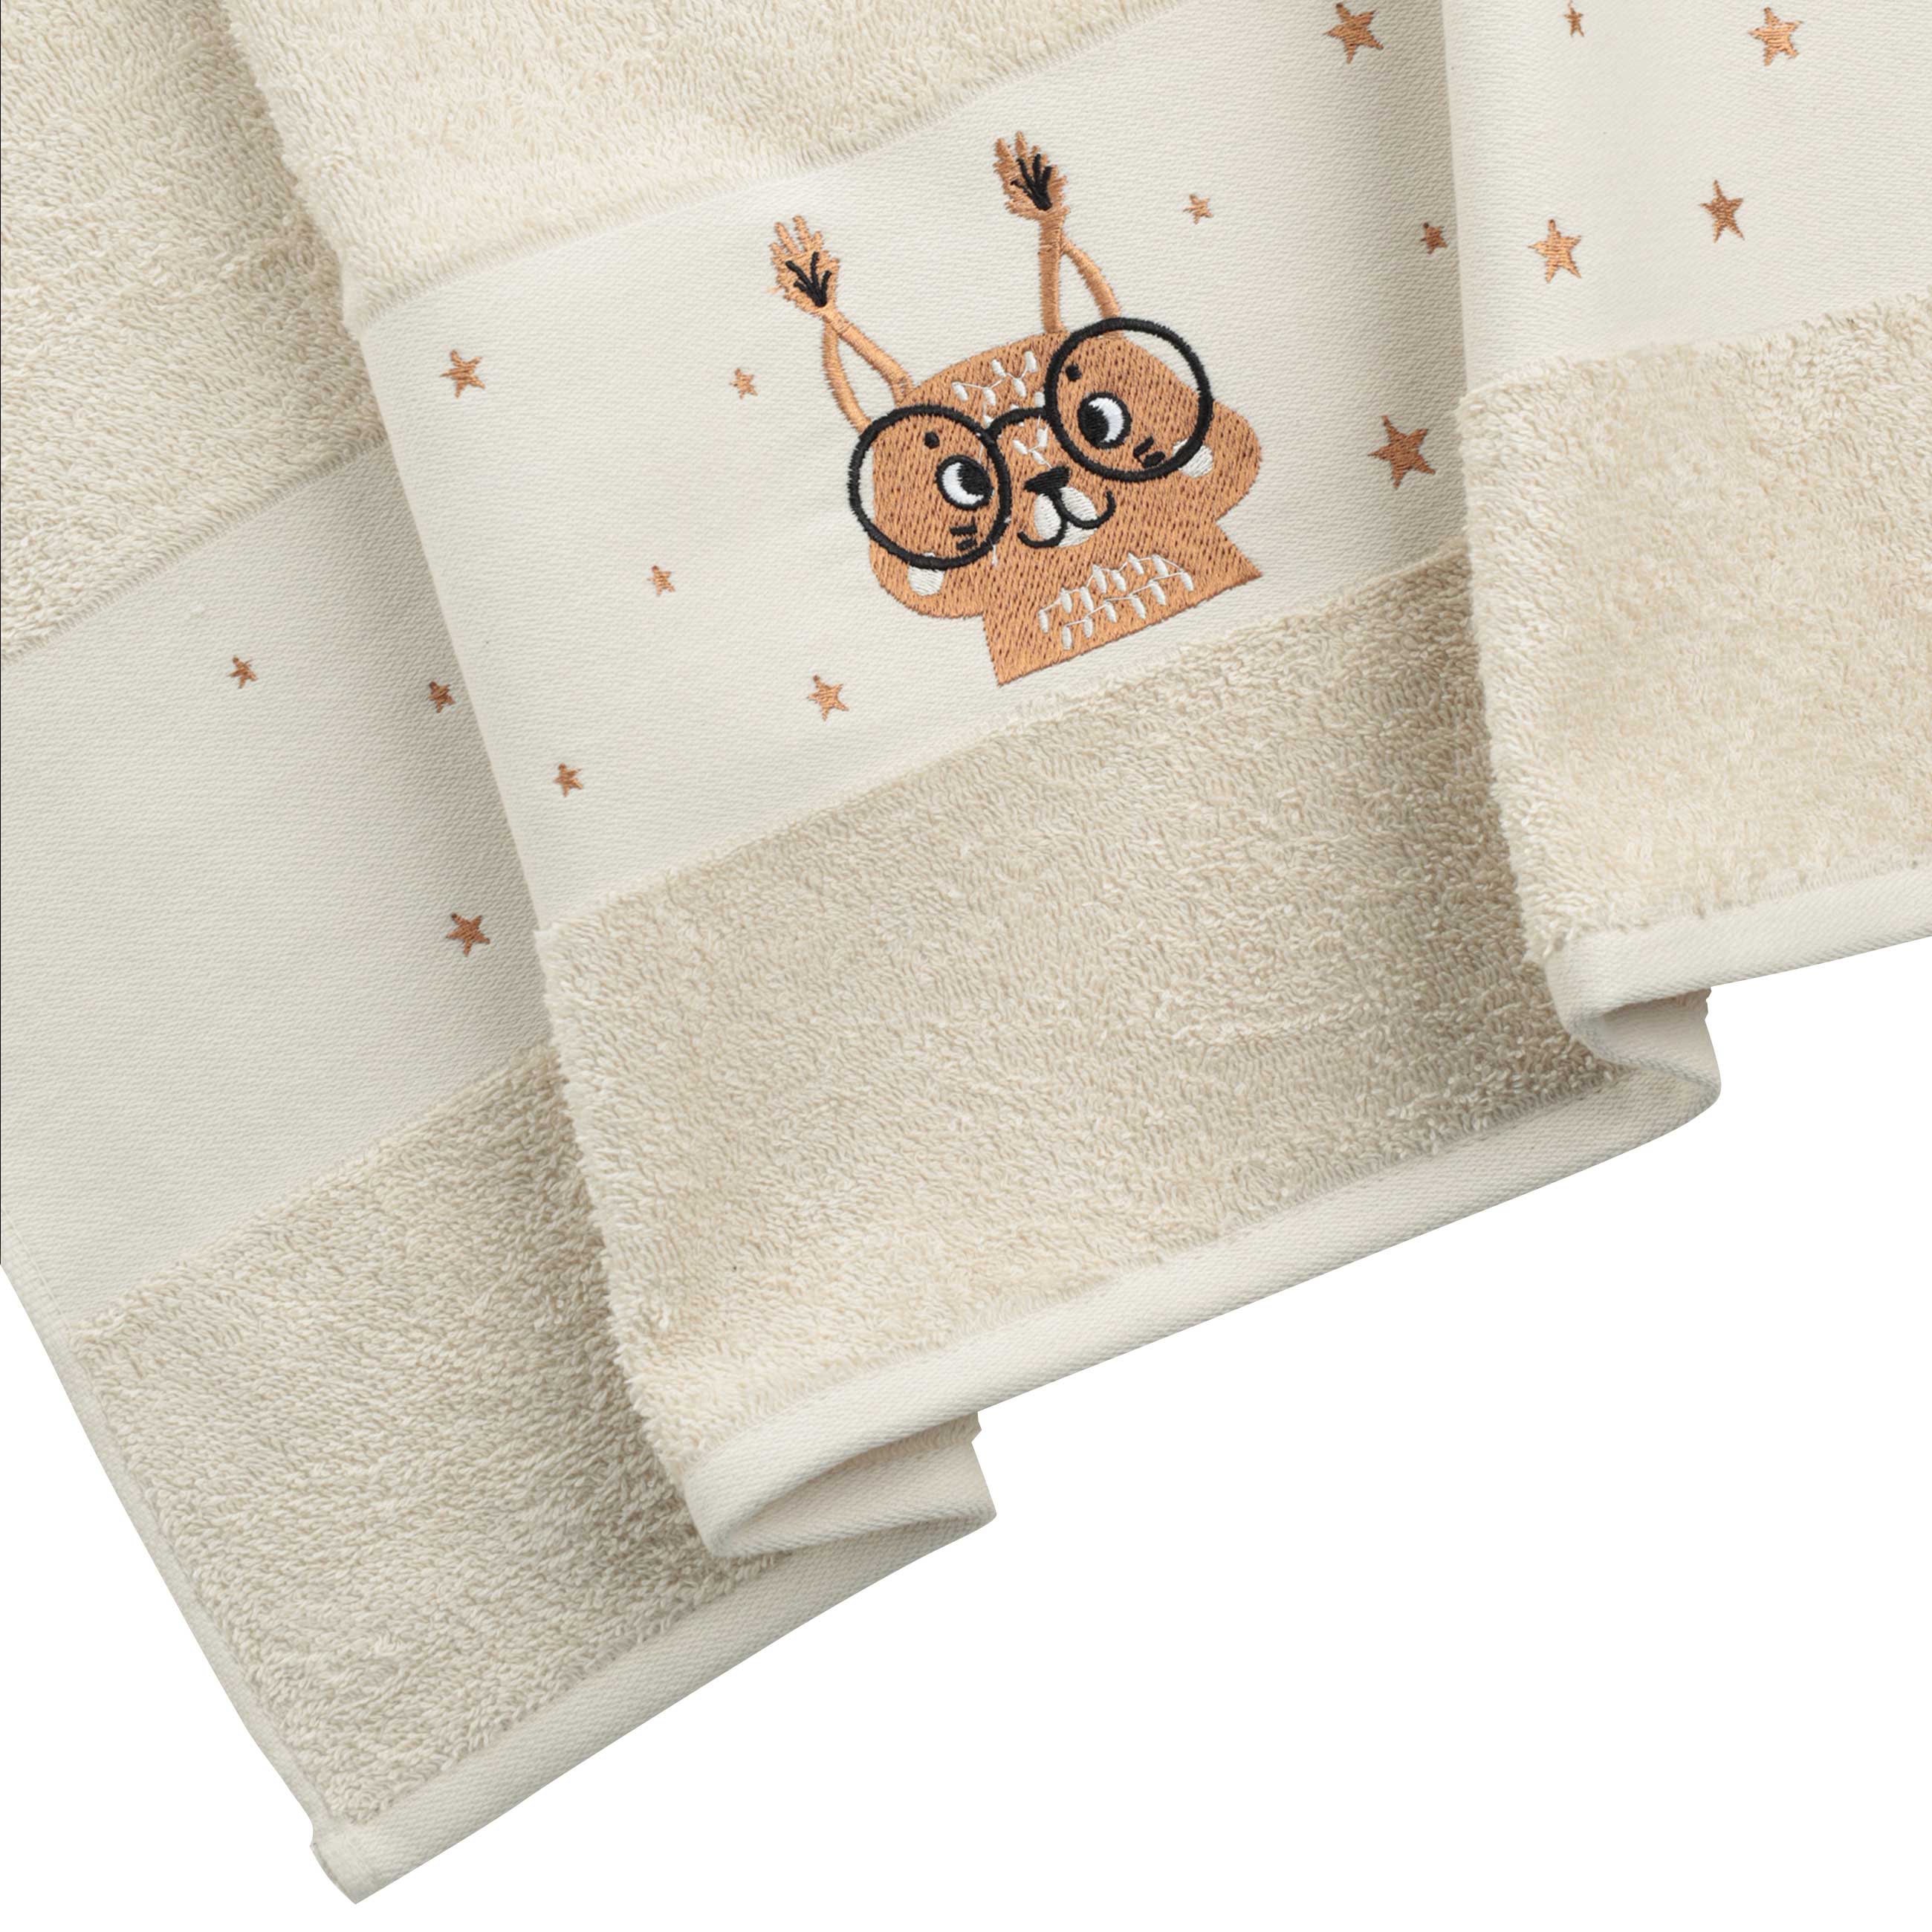 Children's towel, 50x90 cm, cotton, beige, Squirrel, Forest Animals изображение № 2